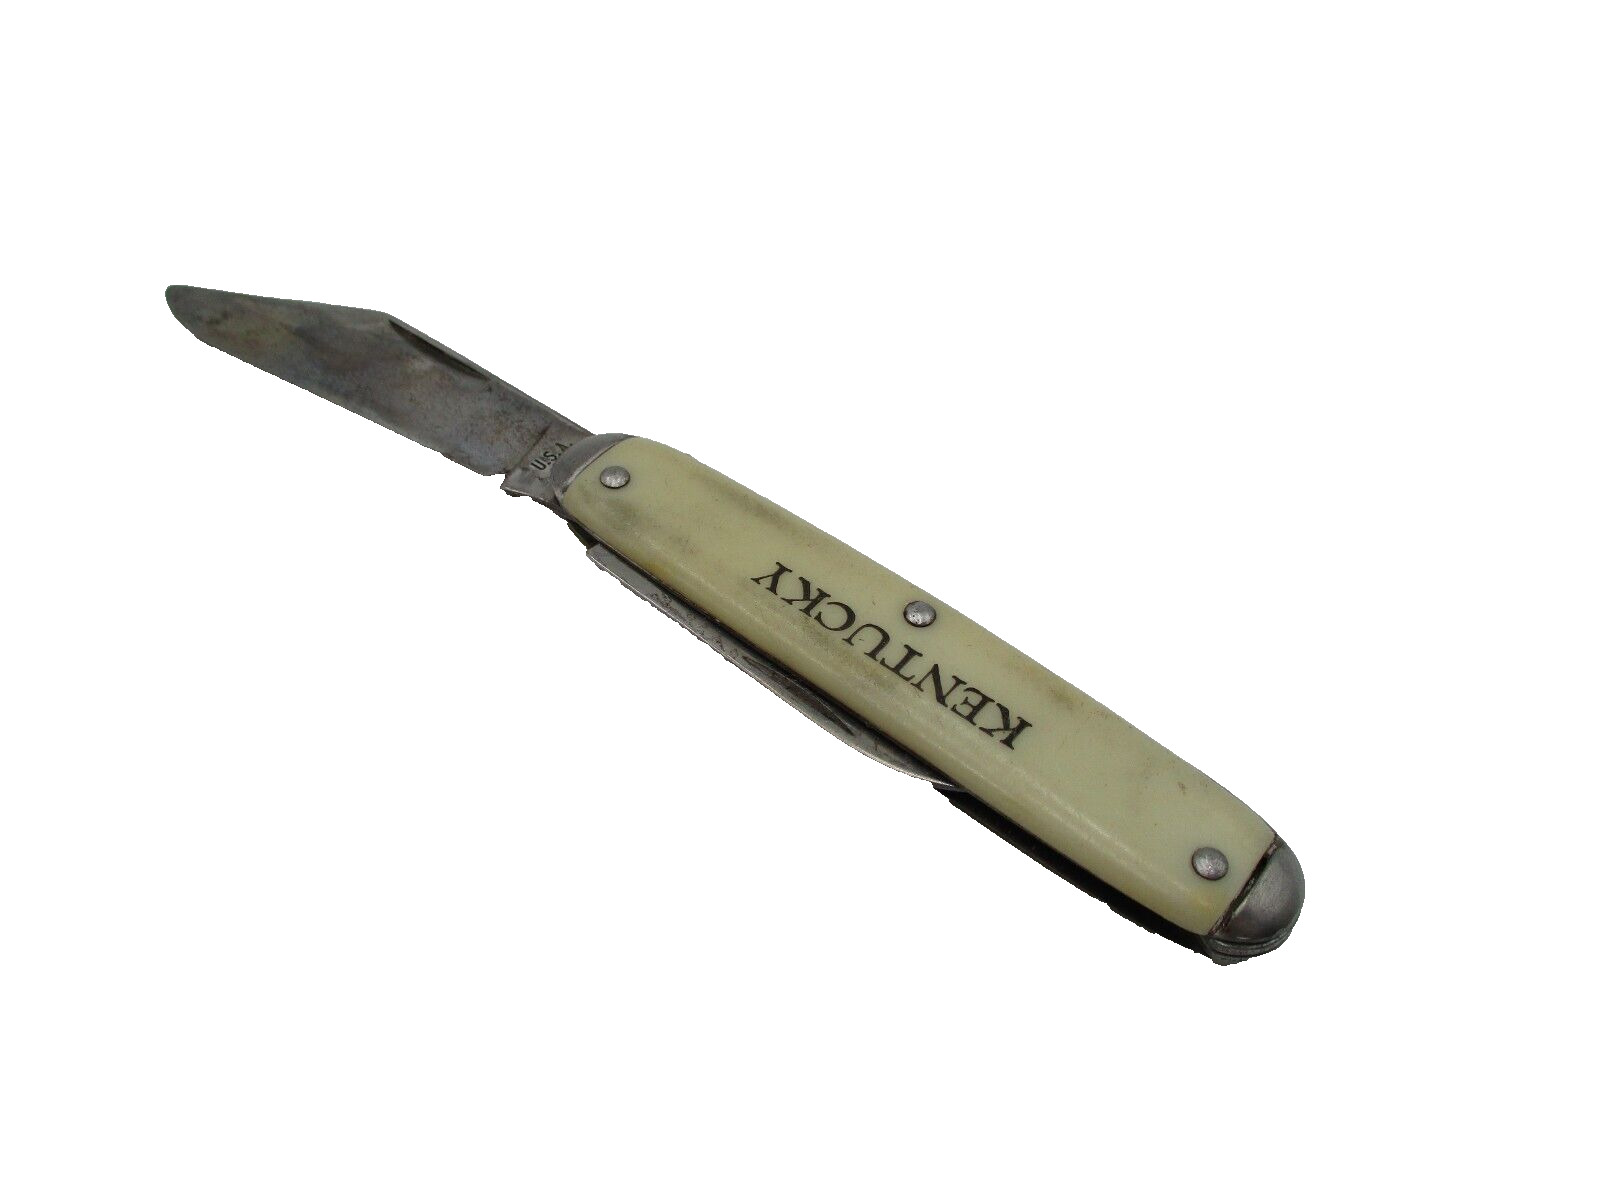 Vintage Kentucky Knife Pocket Knife 2 Blades